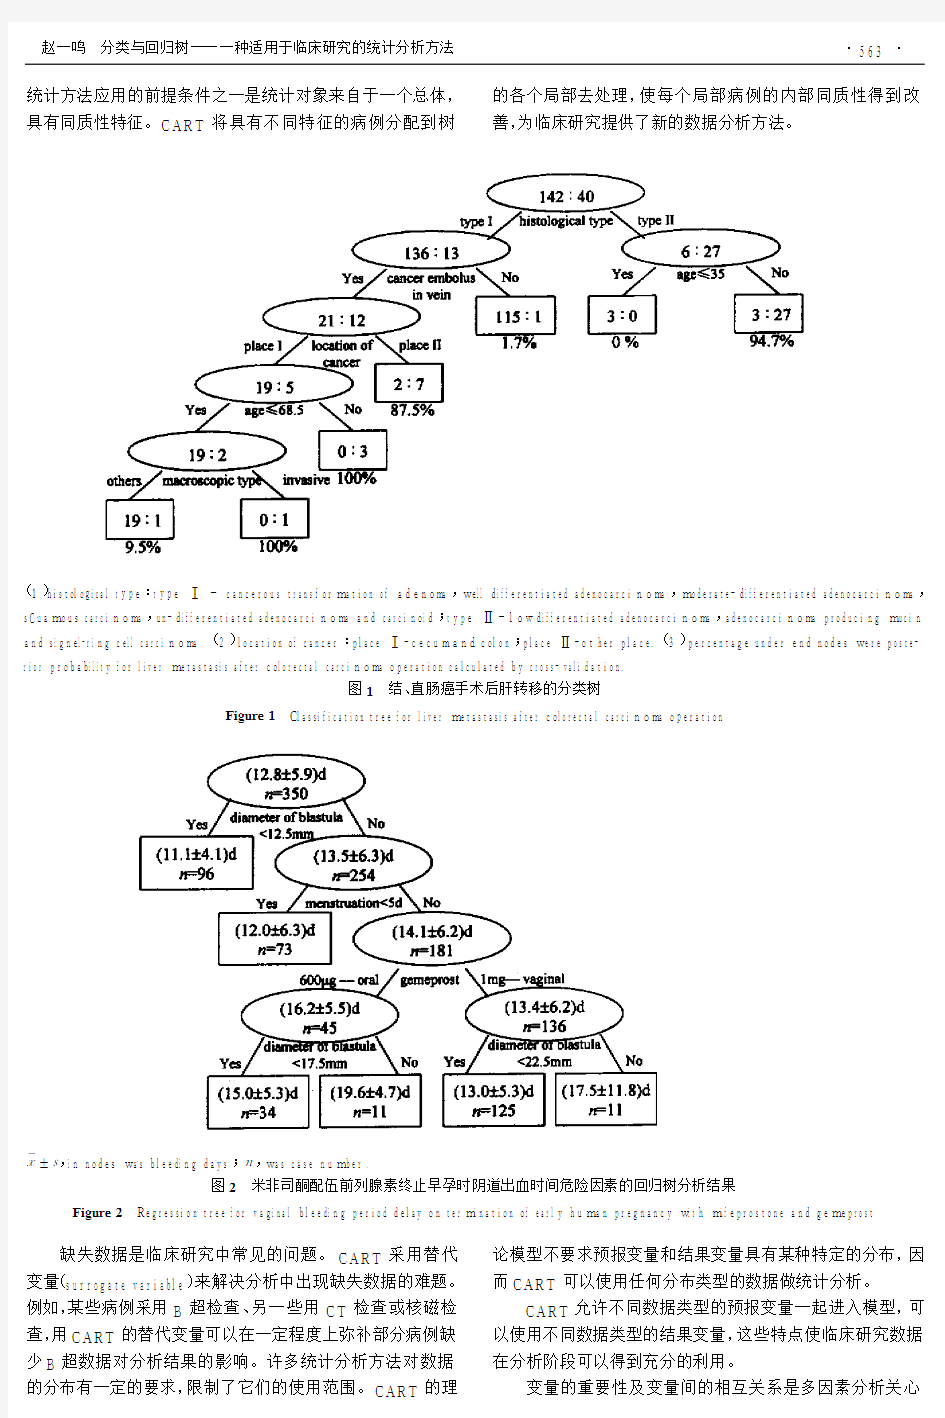 分类与回归树——一种适用于临床研究的统计分析方法